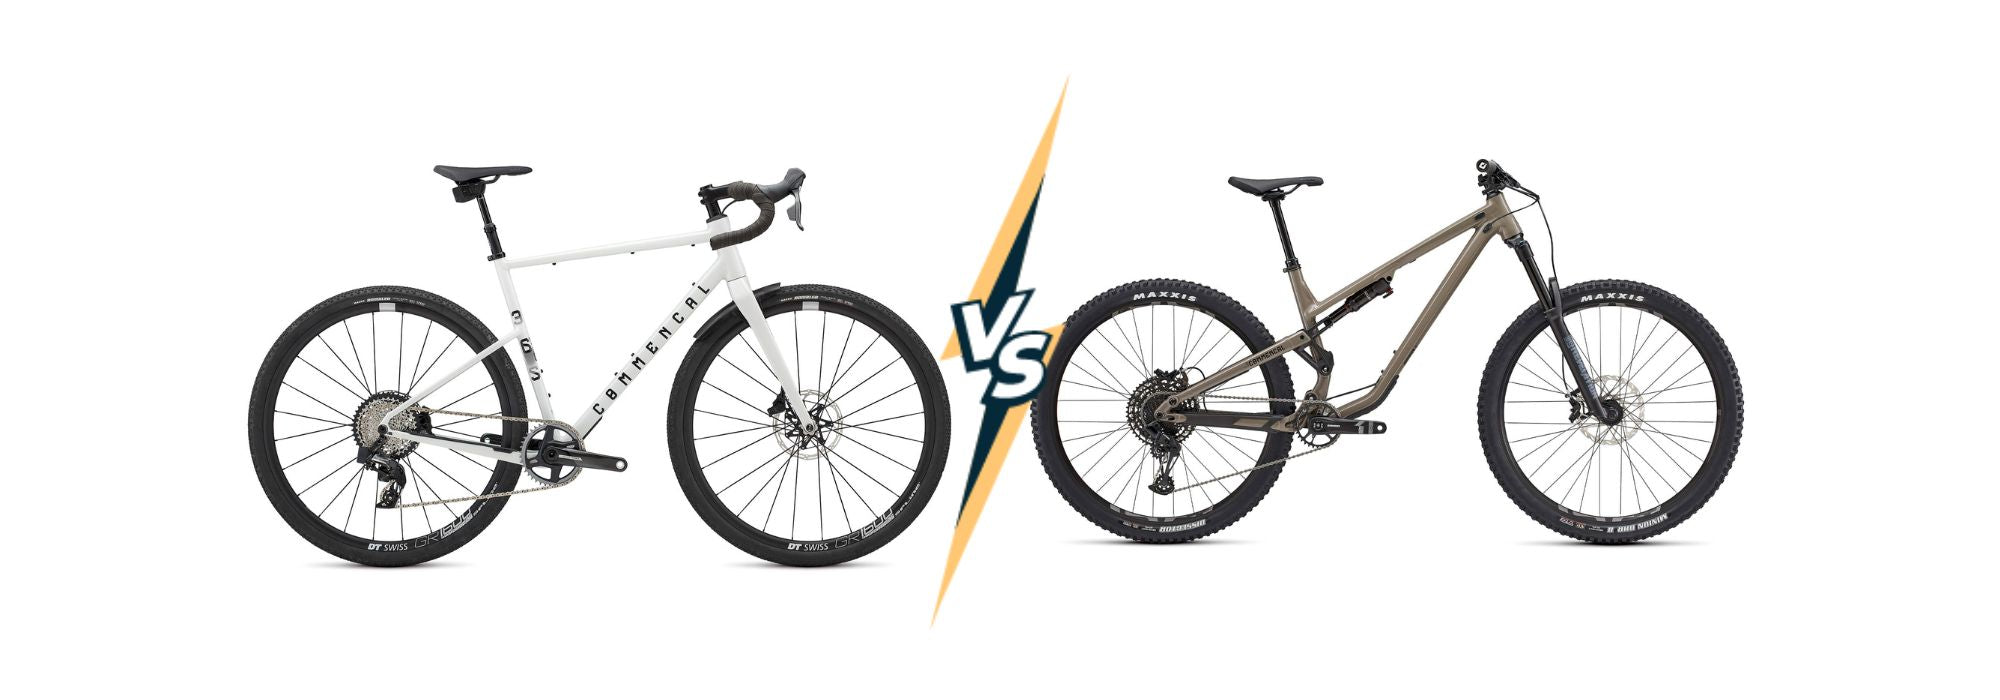 Diferencias Clave entre Bicicletas de Ruta y de Montaña